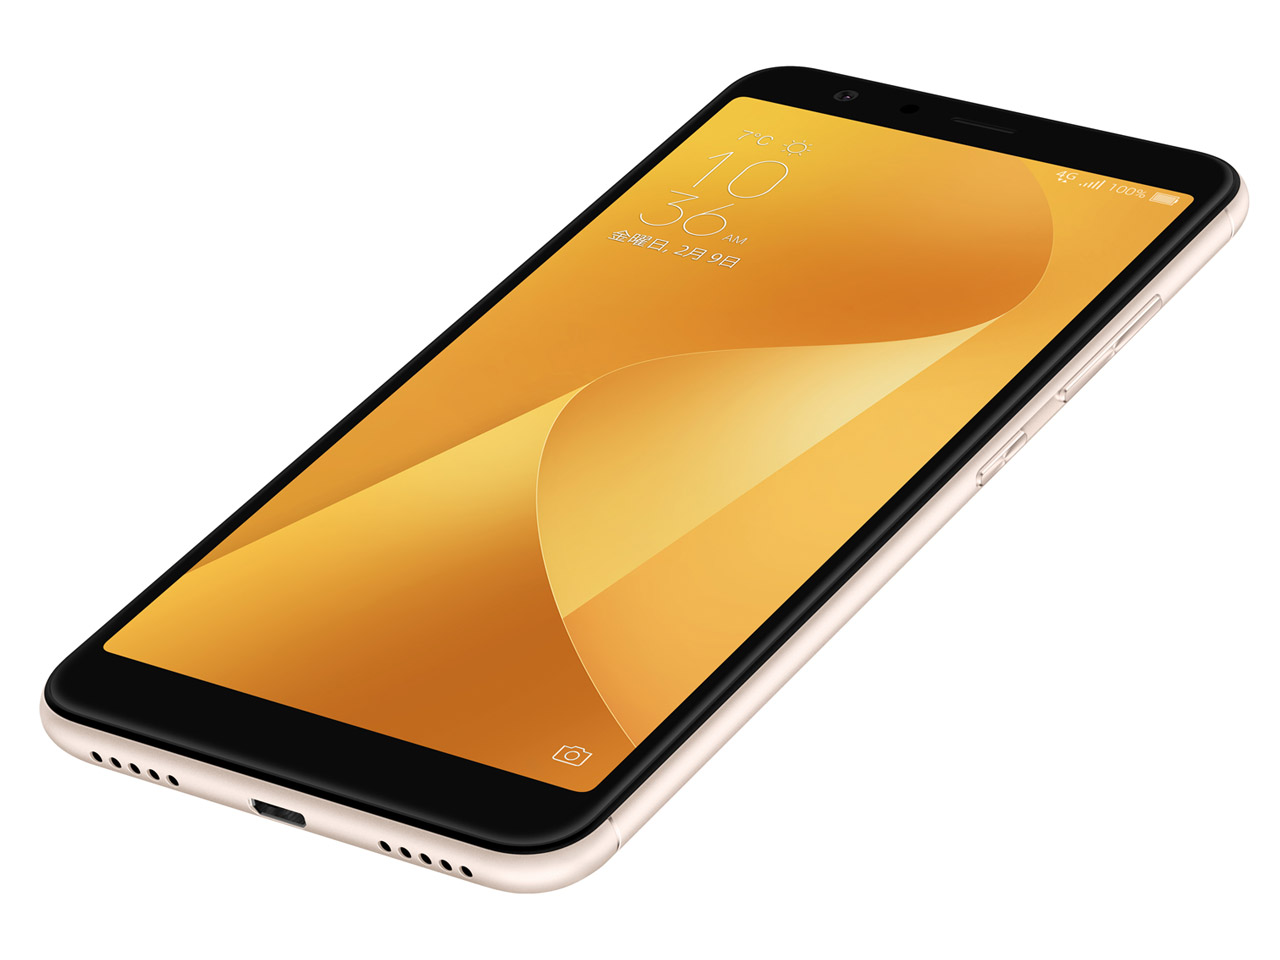 価格.com - 『本体4』 ZenFone Max Plus (M1) SIMフリー [サンライトゴールド] の製品画像